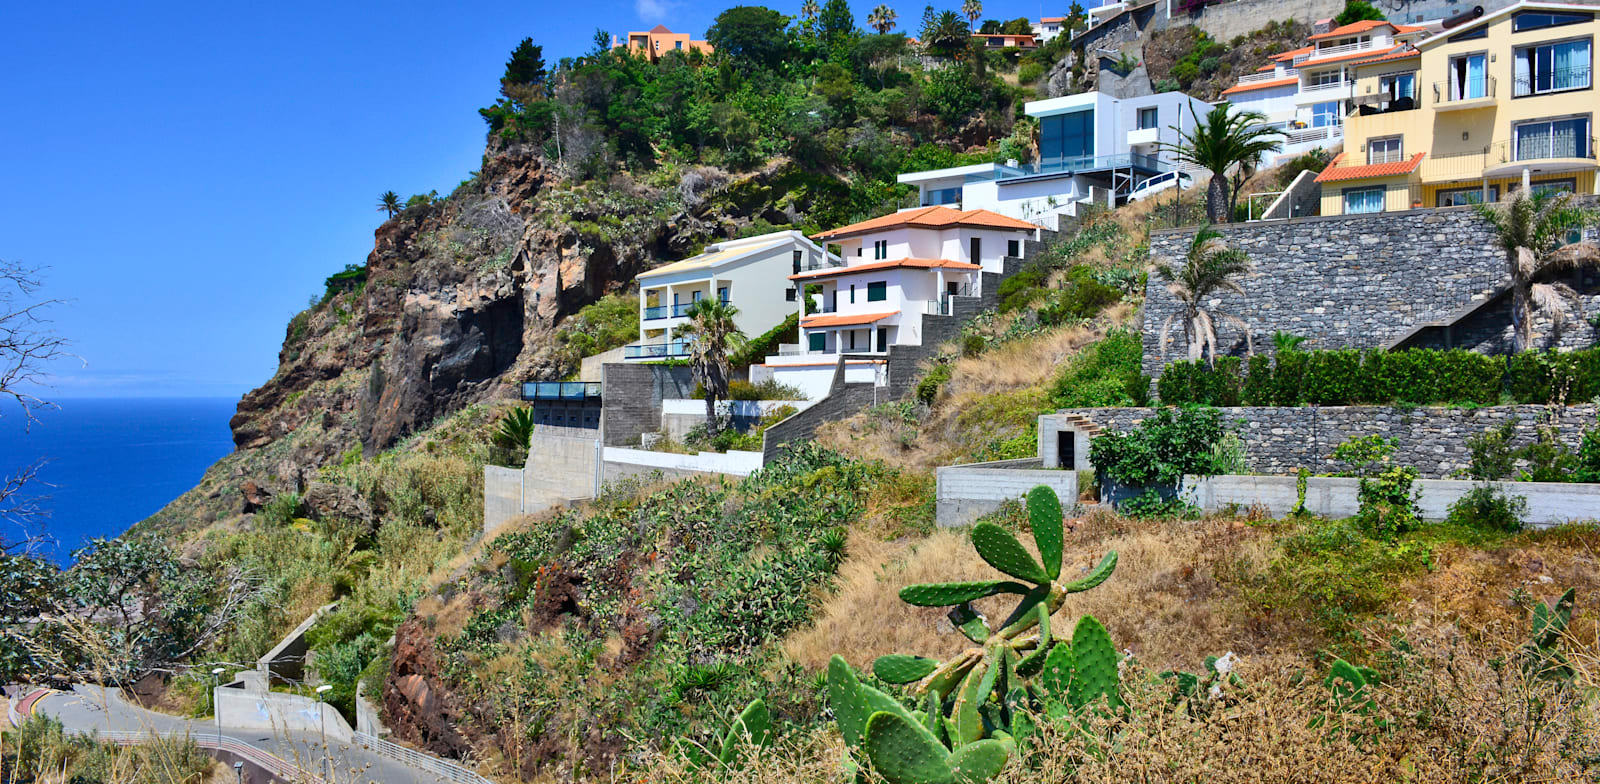 האי מדירה בפורטוגל / צילום: Shutterstock